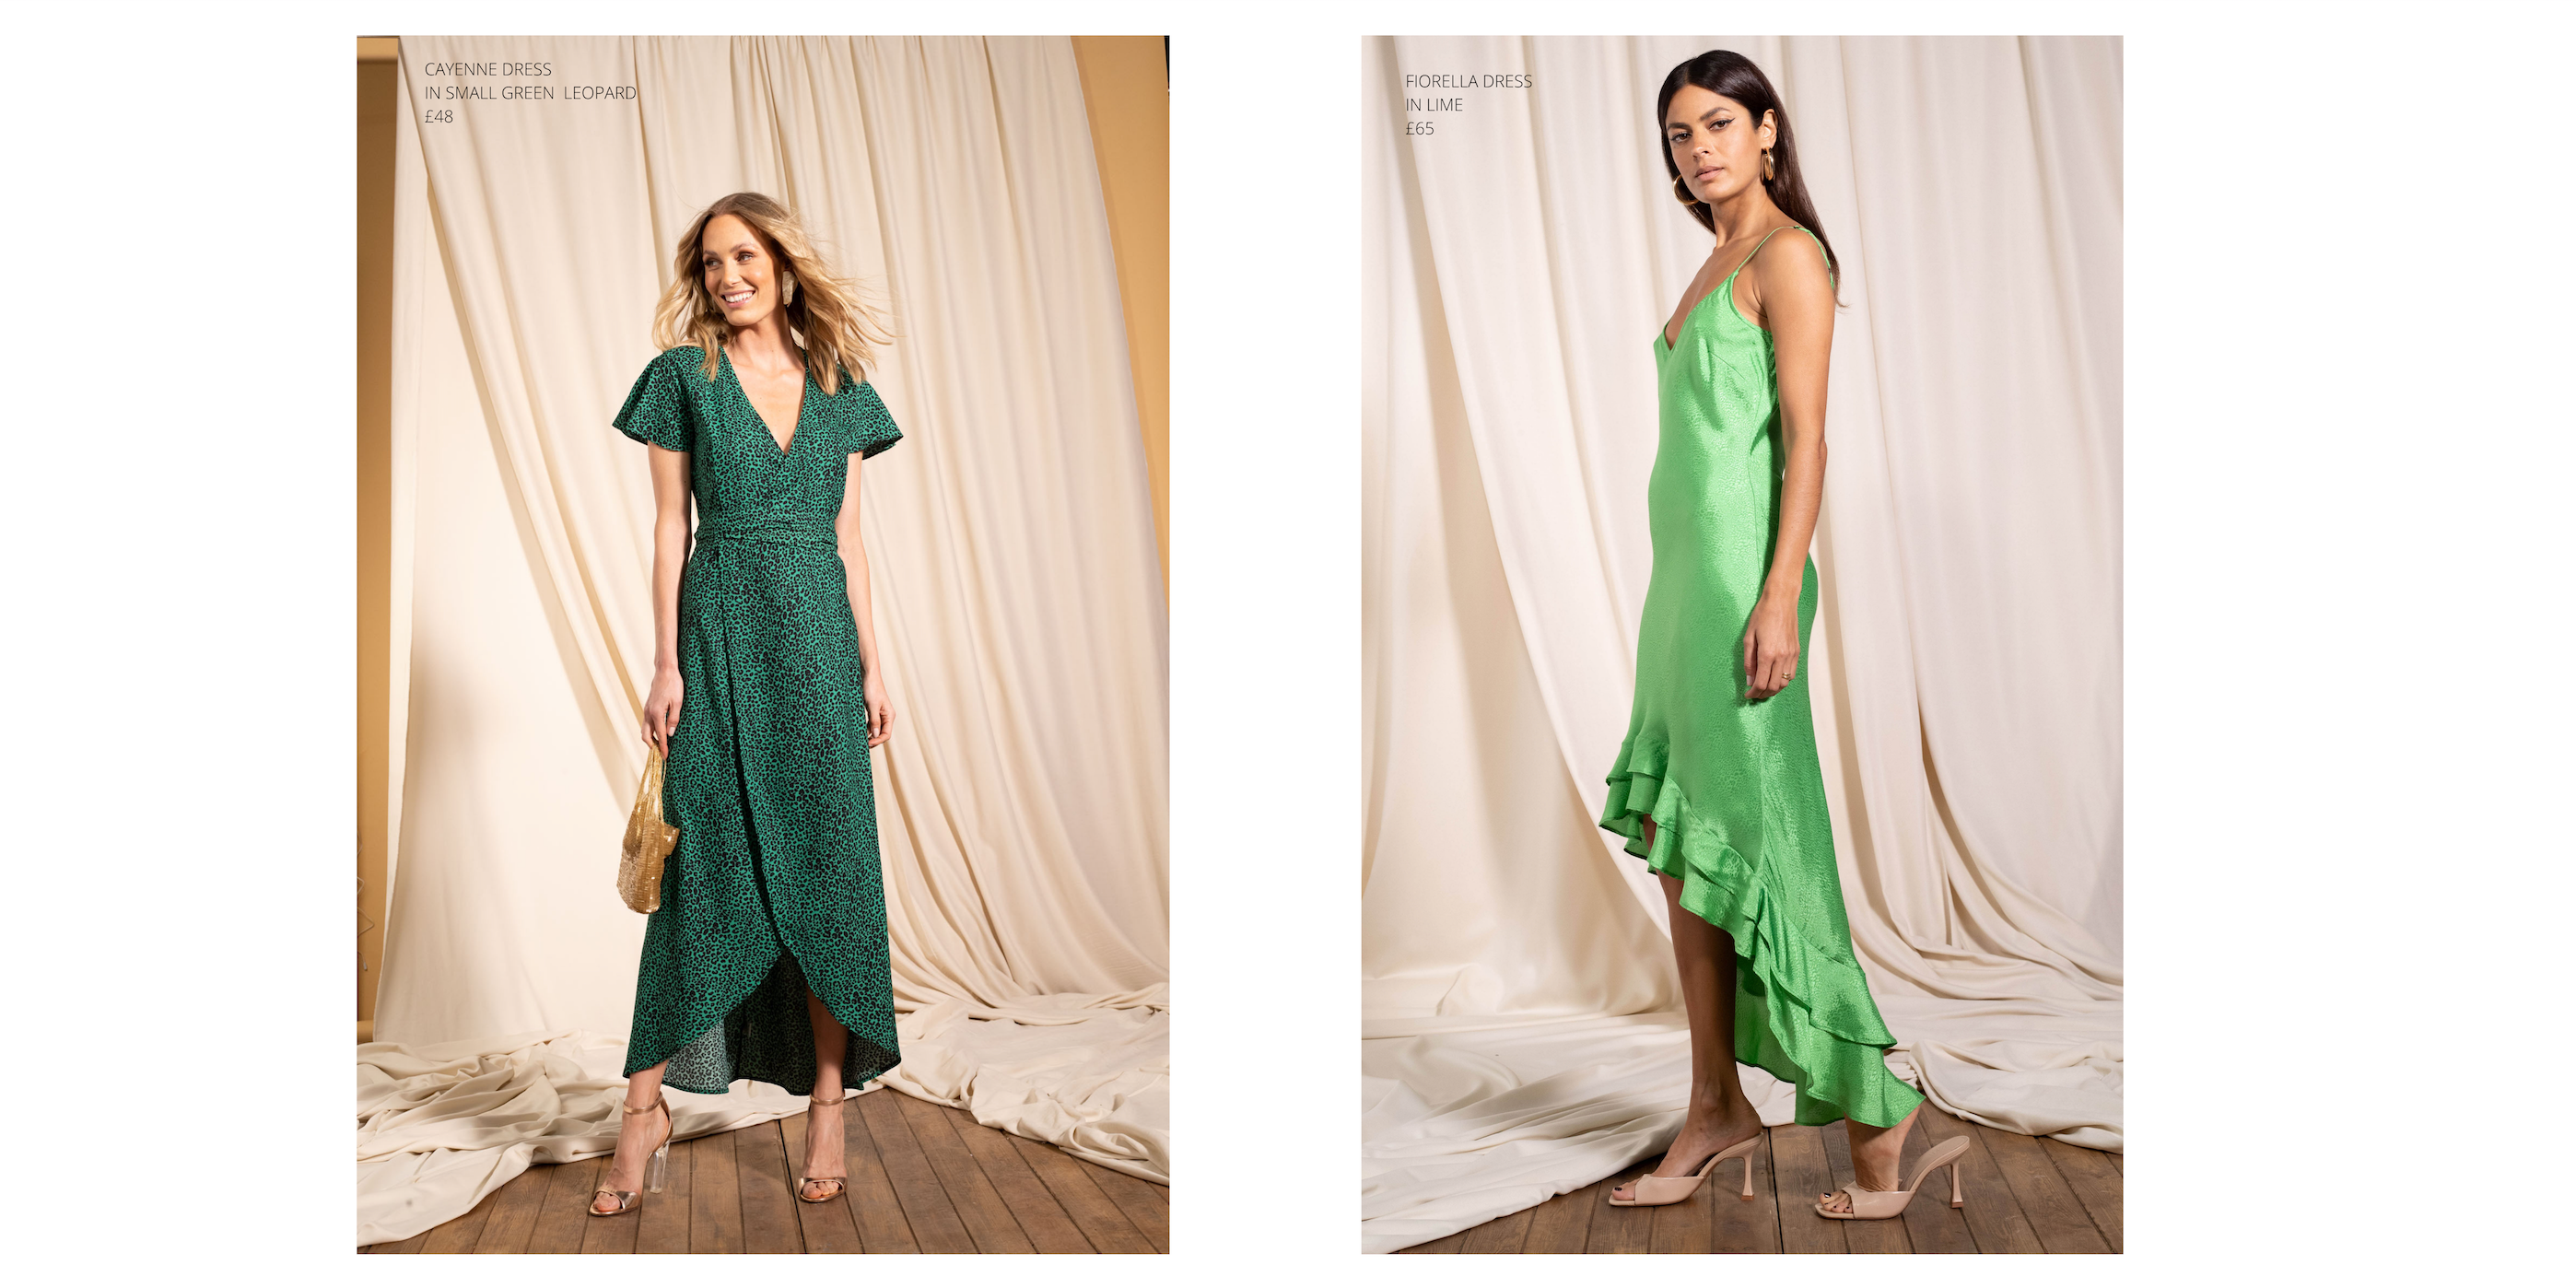 models wearing Cayenne Dress in Small Green Leopard & Fiorella Dress in Lime